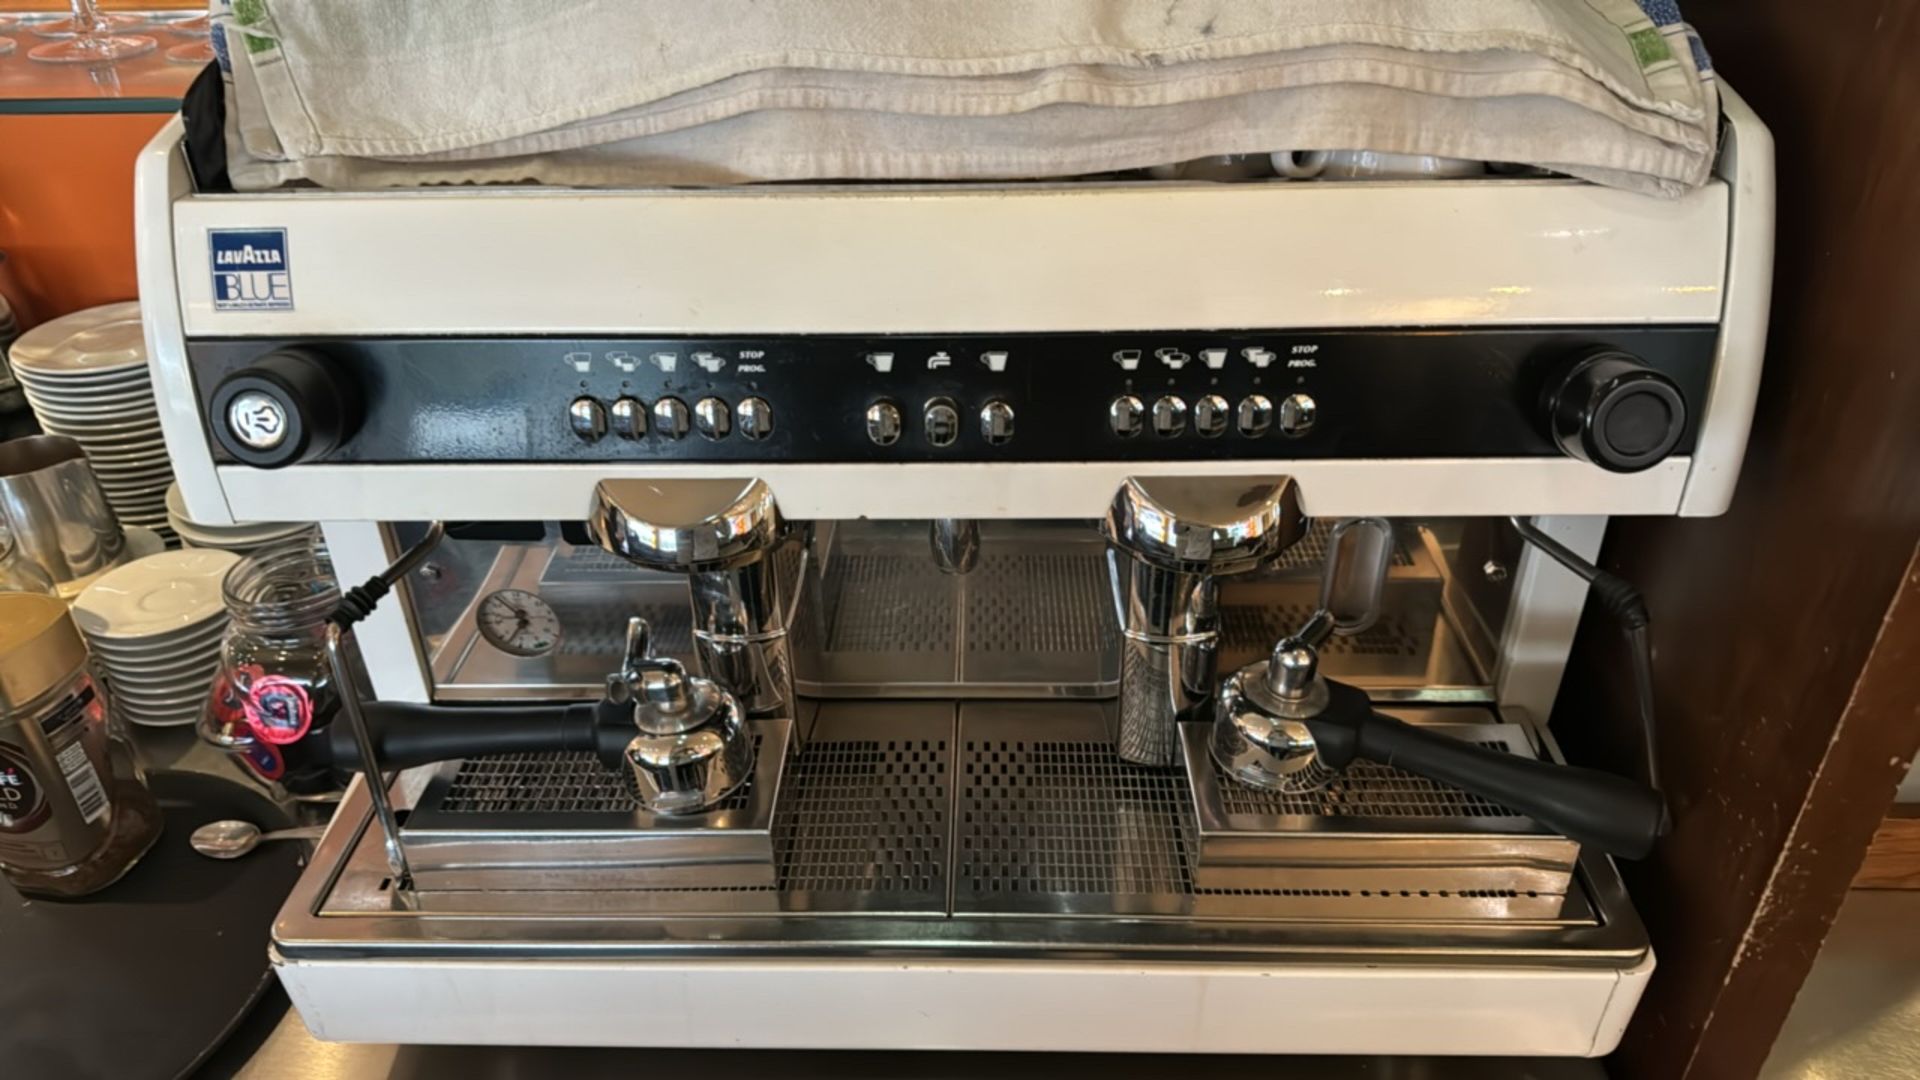 Lavazza Blue Barista Coffee Machine - Image 3 of 5